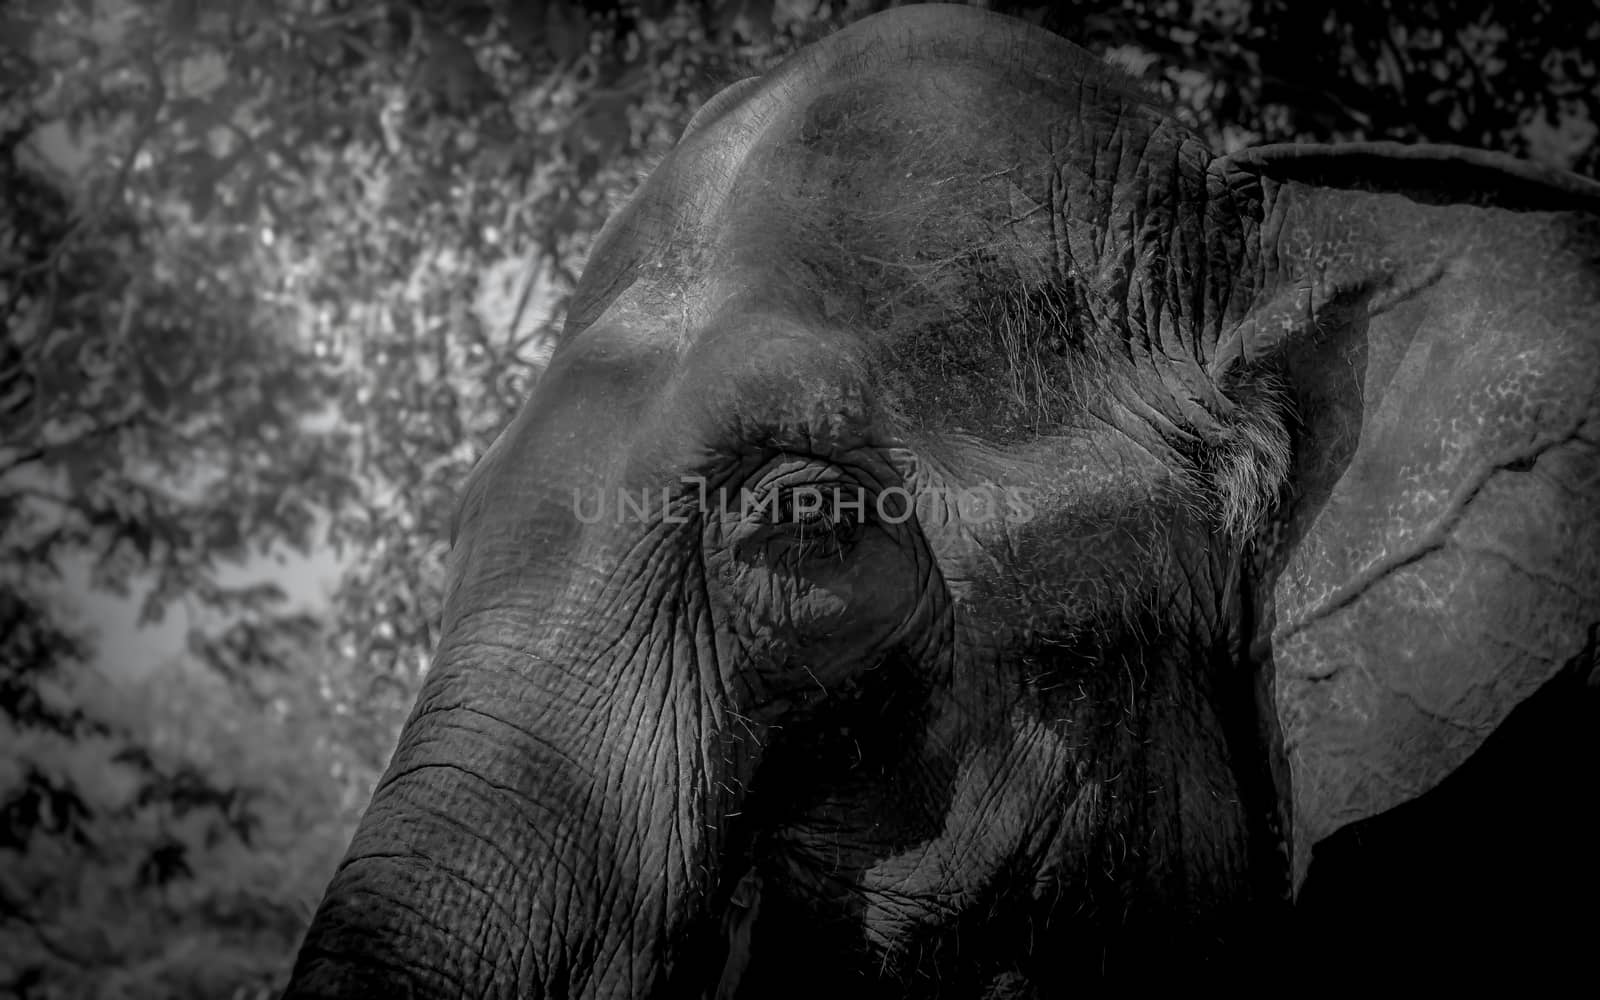 elephant face close up backgrouund